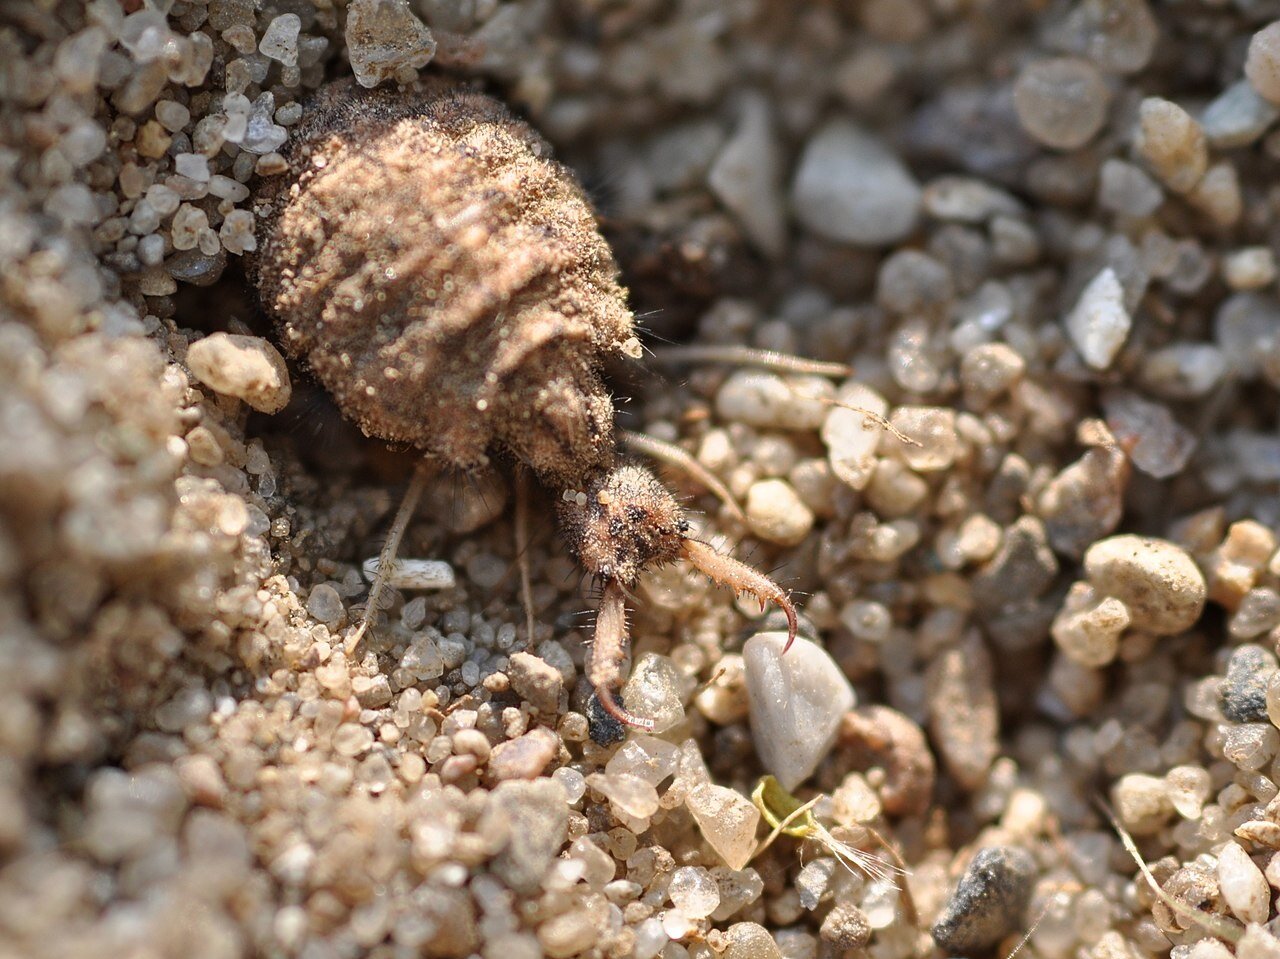 Zdjęcie przedstawia larwę zagrzebaną w piasku. Ma duży odwłok, kilka par odnóży oraz ostro zakończone żuwaczki.